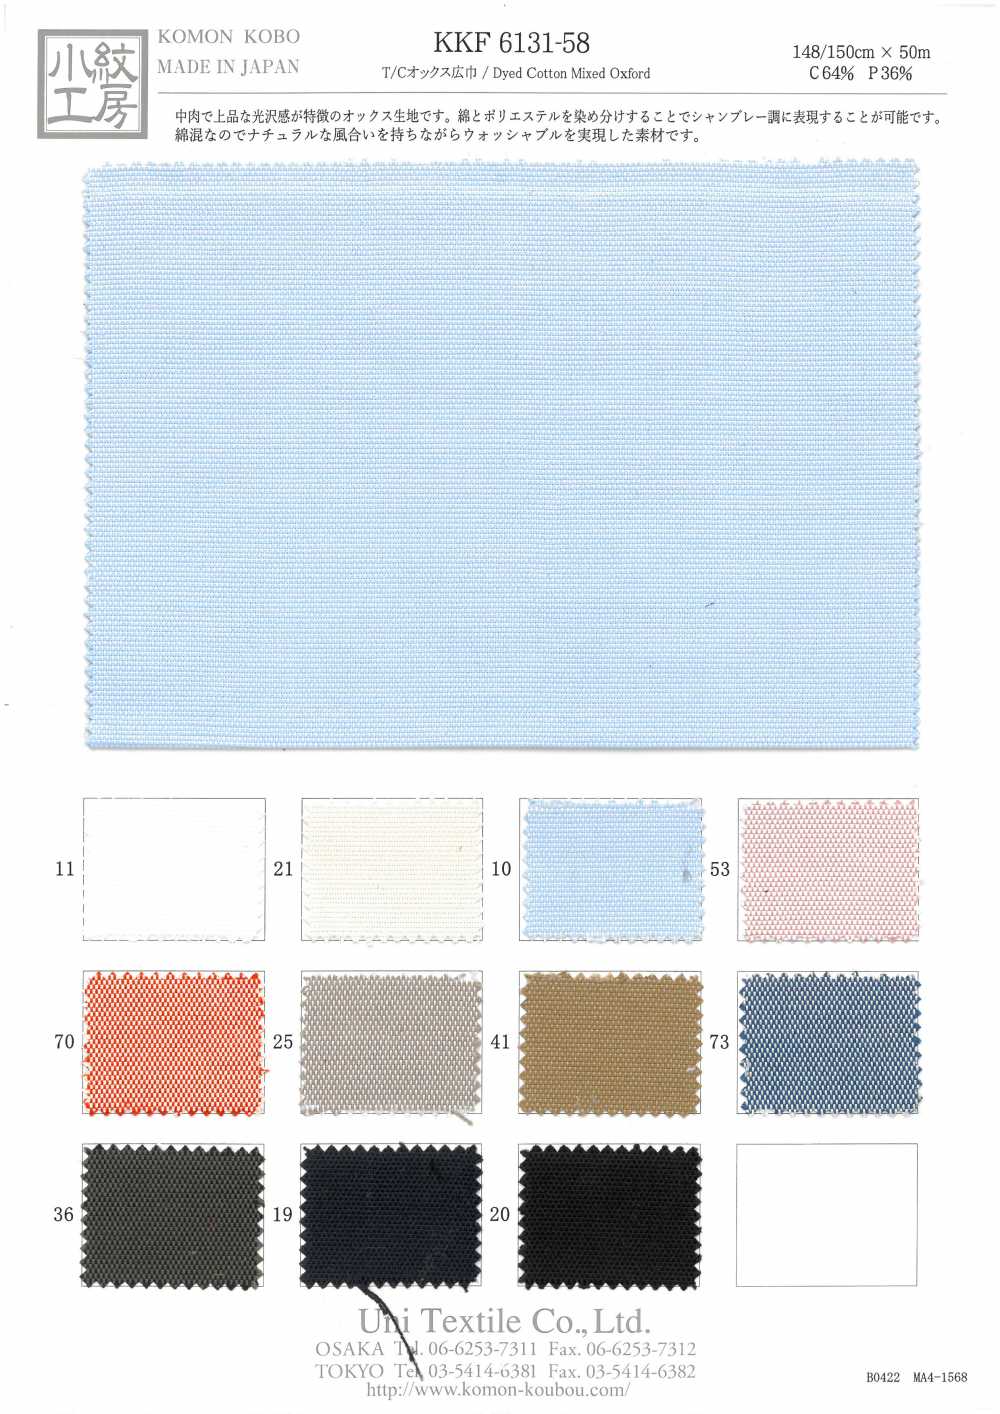 KKF6131-58 Chiều Rộng T / C Vải Oxford Khổ Rộng Uni Textile